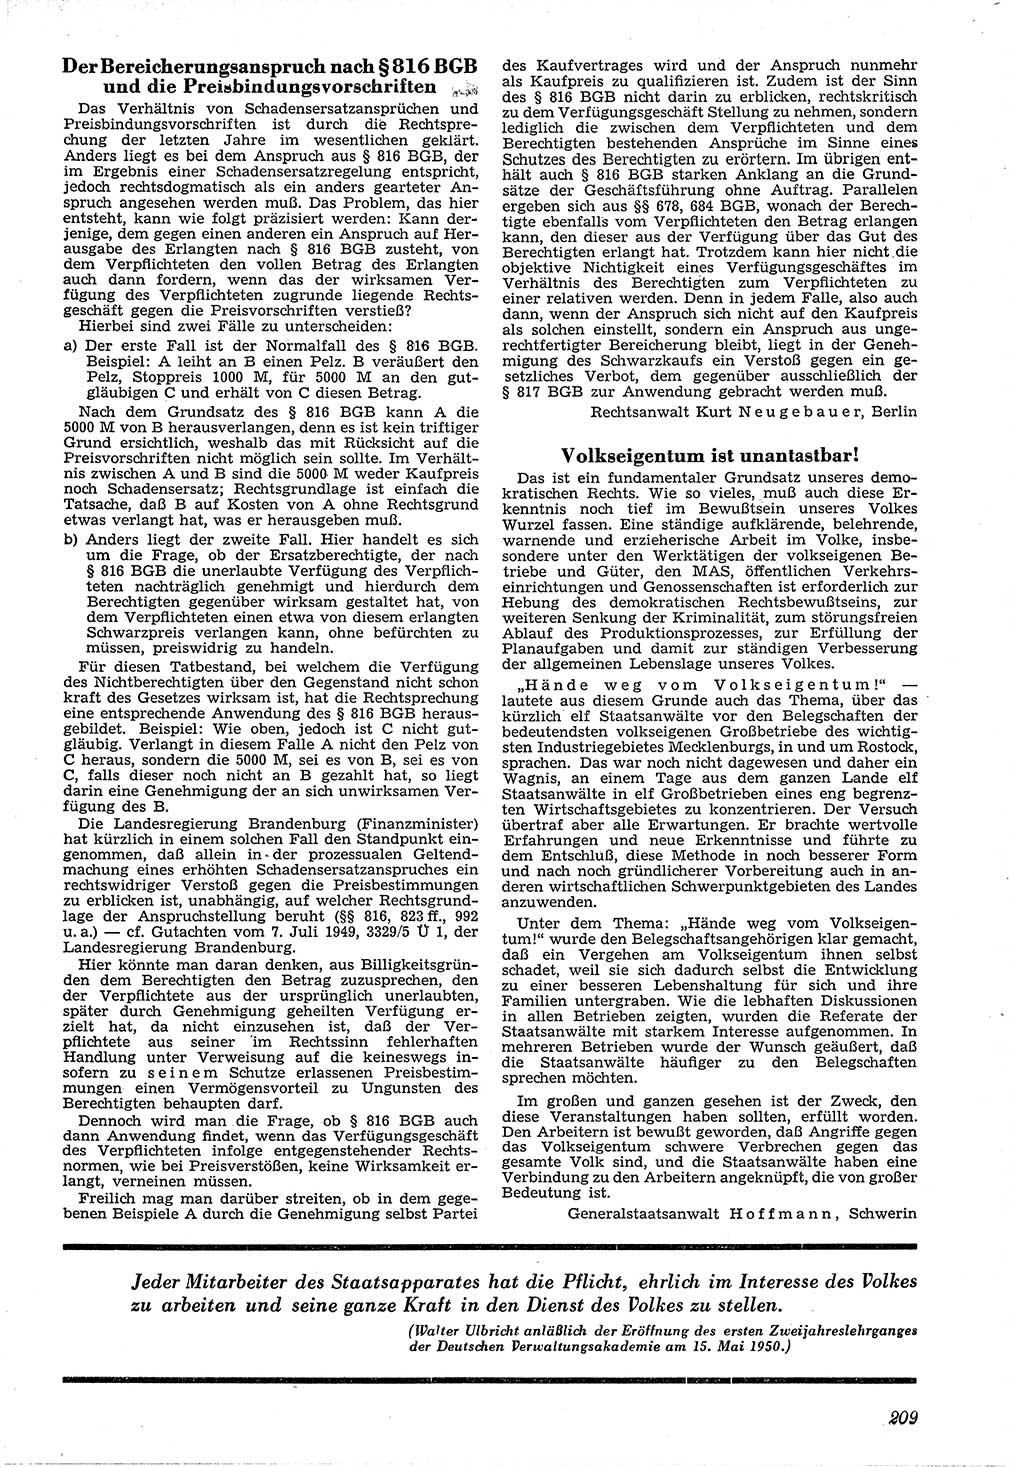 Neue Justiz (NJ), Zeitschrift für Recht und Rechtswissenschaft [Deutsche Demokratische Republik (DDR)], 4. Jahrgang 1950, Seite 209 (NJ DDR 1950, S. 209)